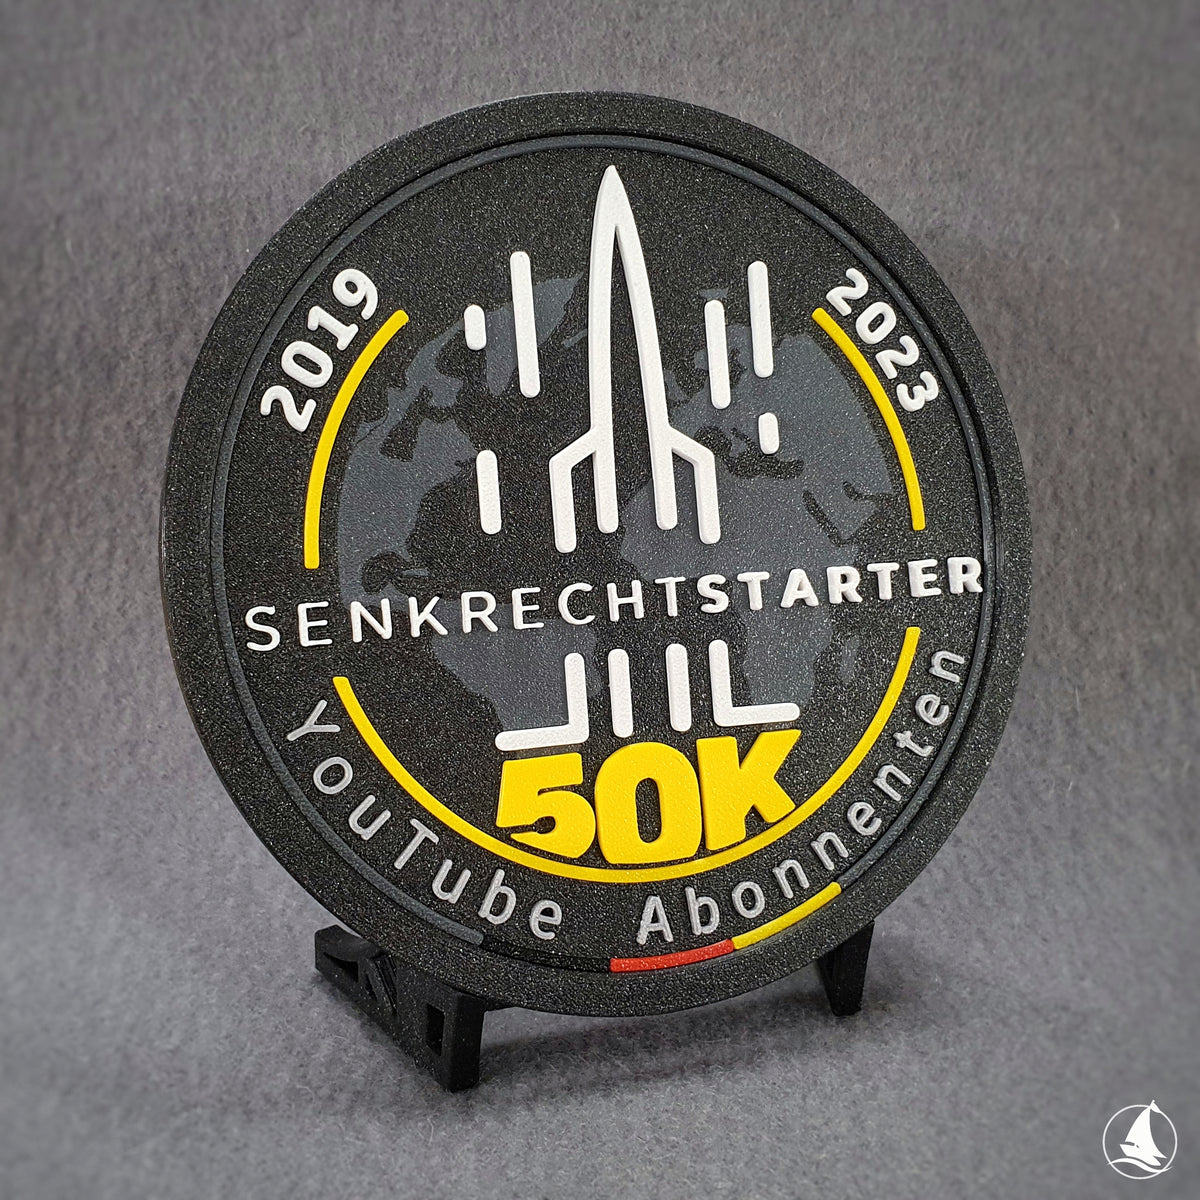 Senkrechtstarter - 50k Abonnenten 3D-Druck Patch